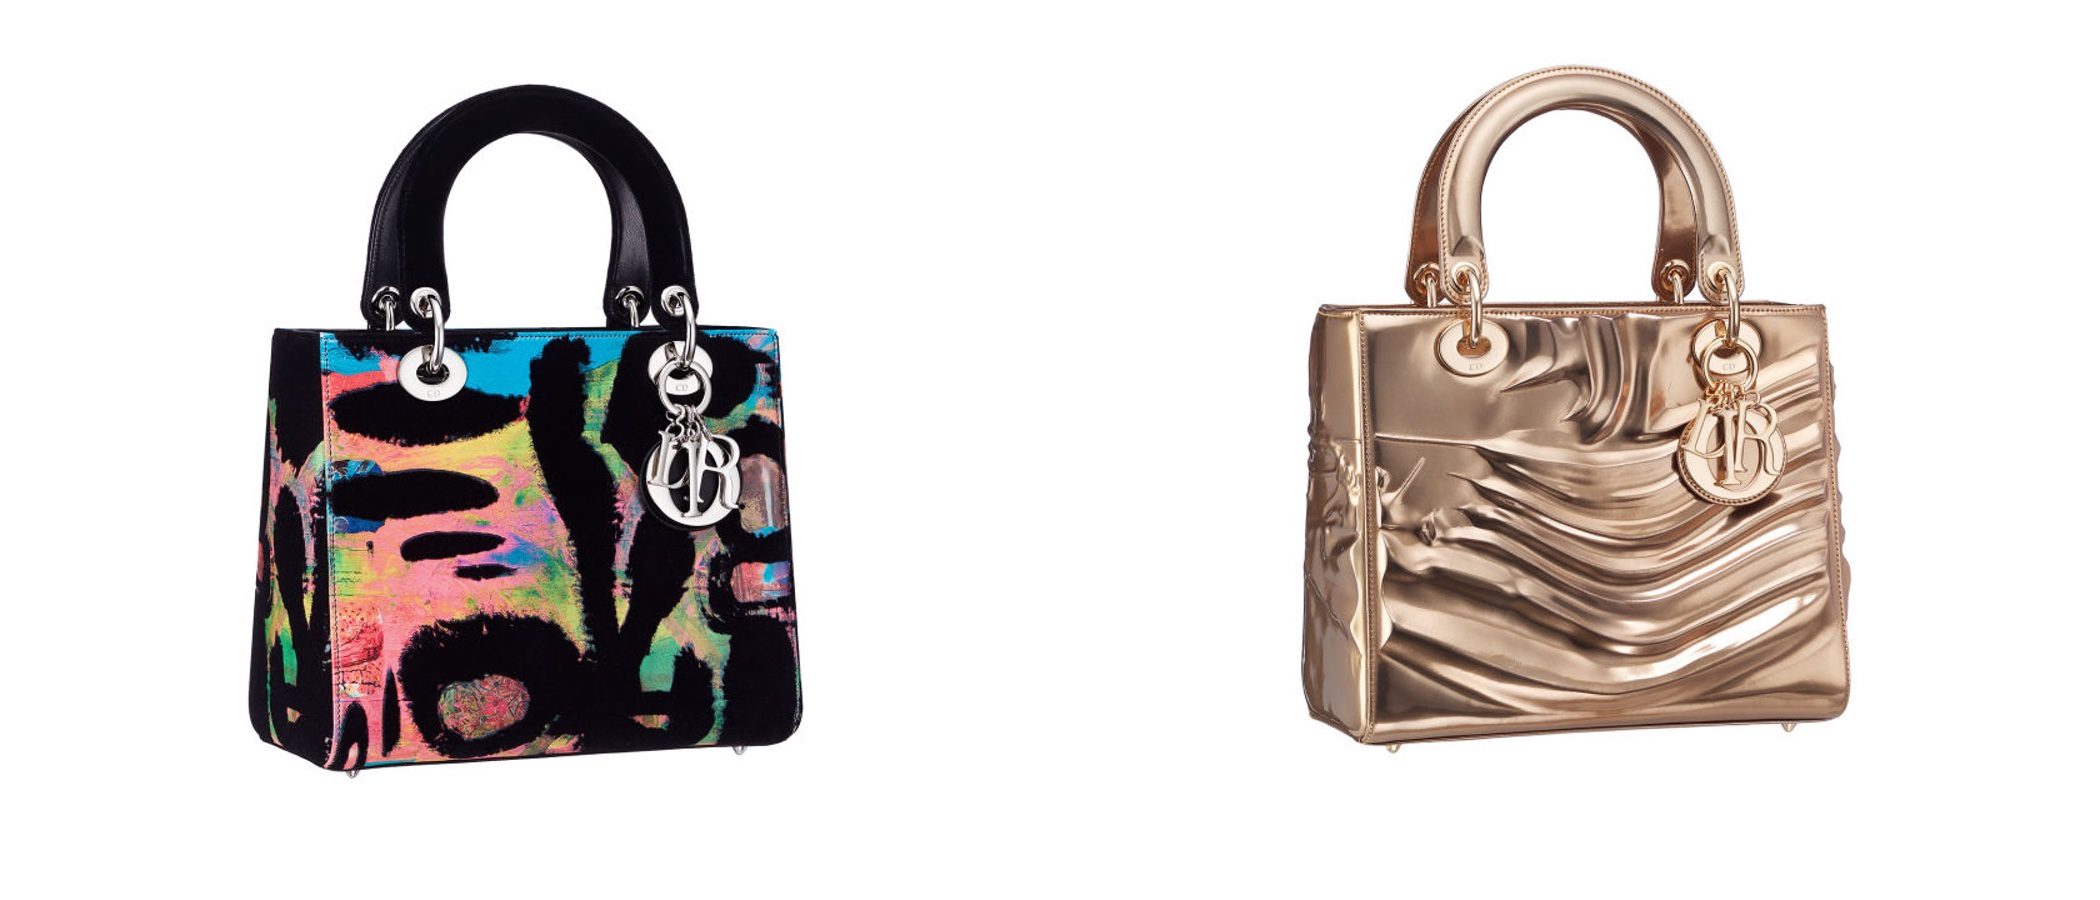 Dior decora su icónico bolso 'Lady' con estampados artísticos y contemporáneos únicos